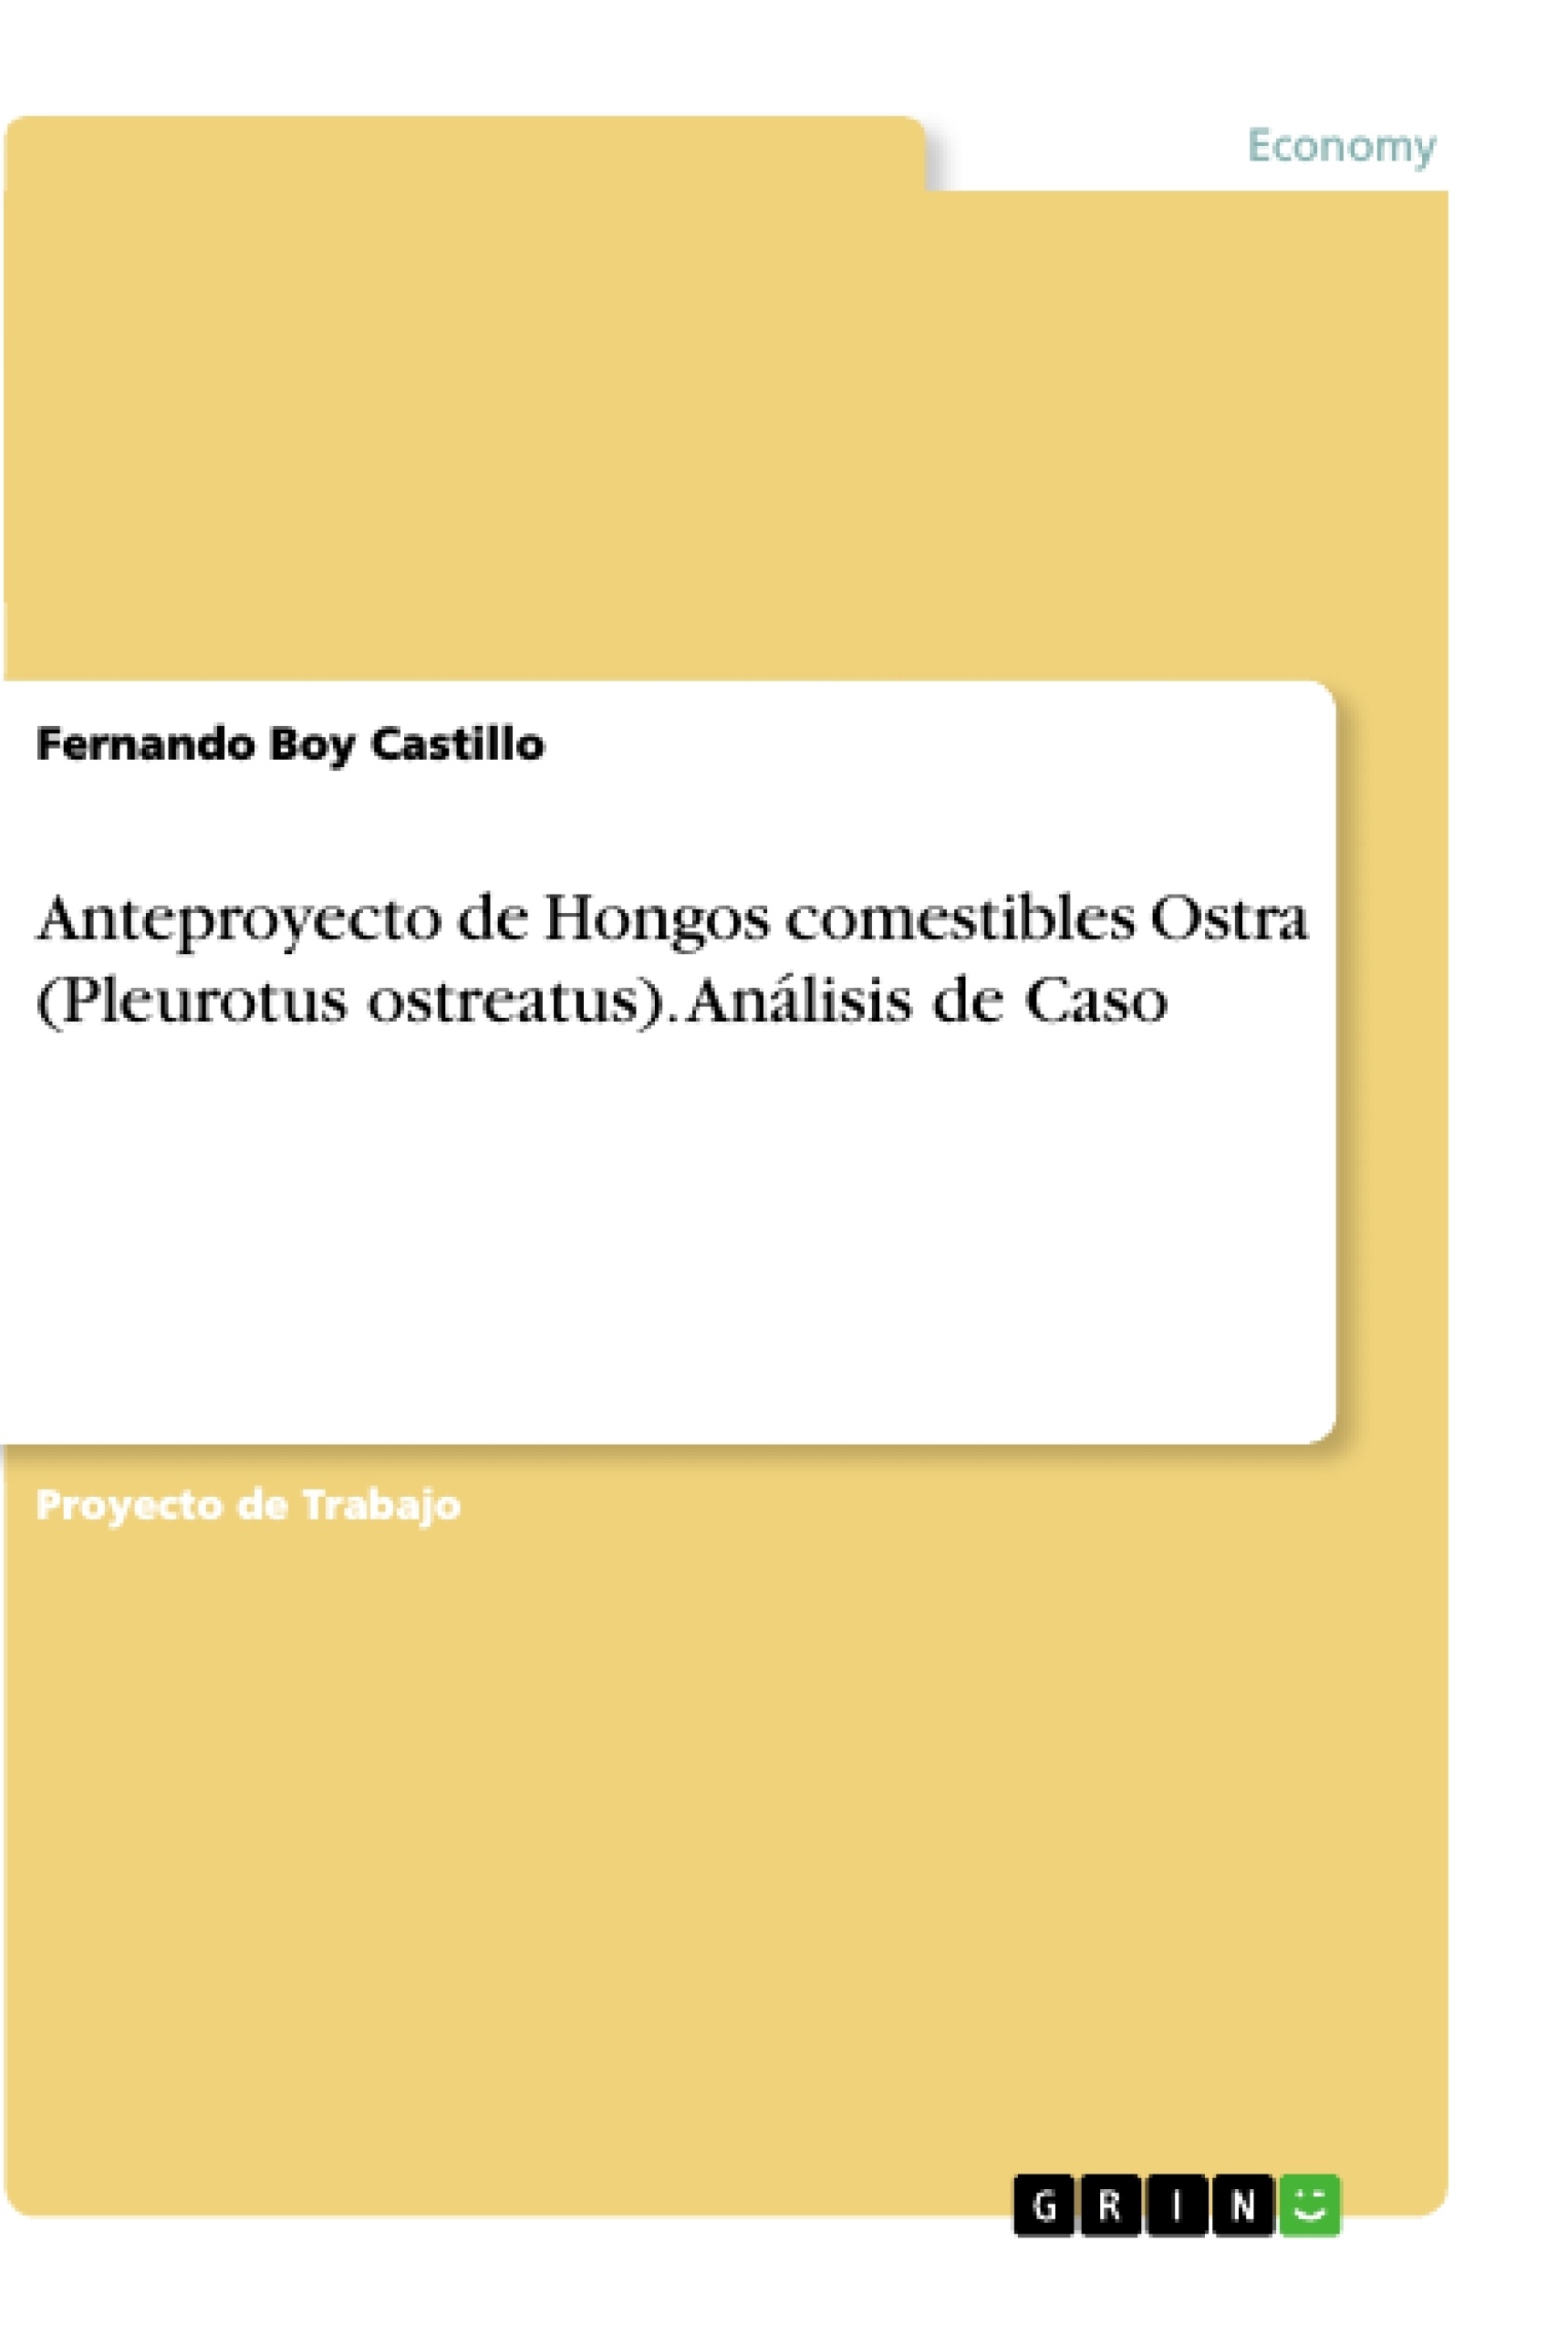 Título: Anteproyecto de Hongos comestibles Ostra (Pleurotus ostreatus). Análisis de Caso